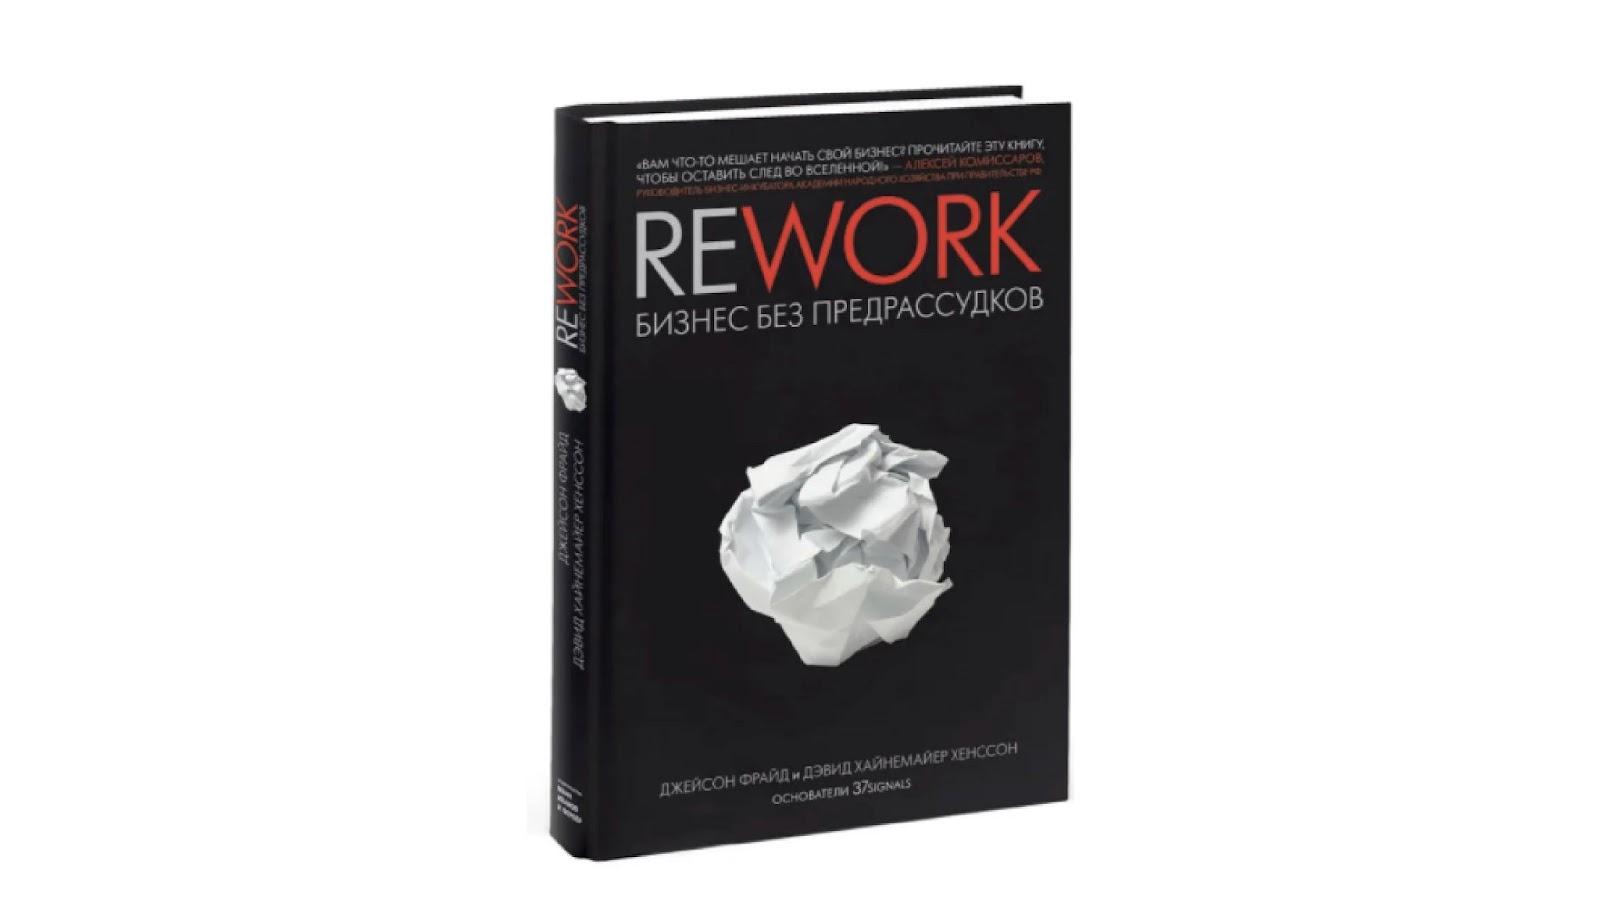 Джейсон Фрайд, Дэвид Ханссон «Rework. Бизнес без предрассудков»